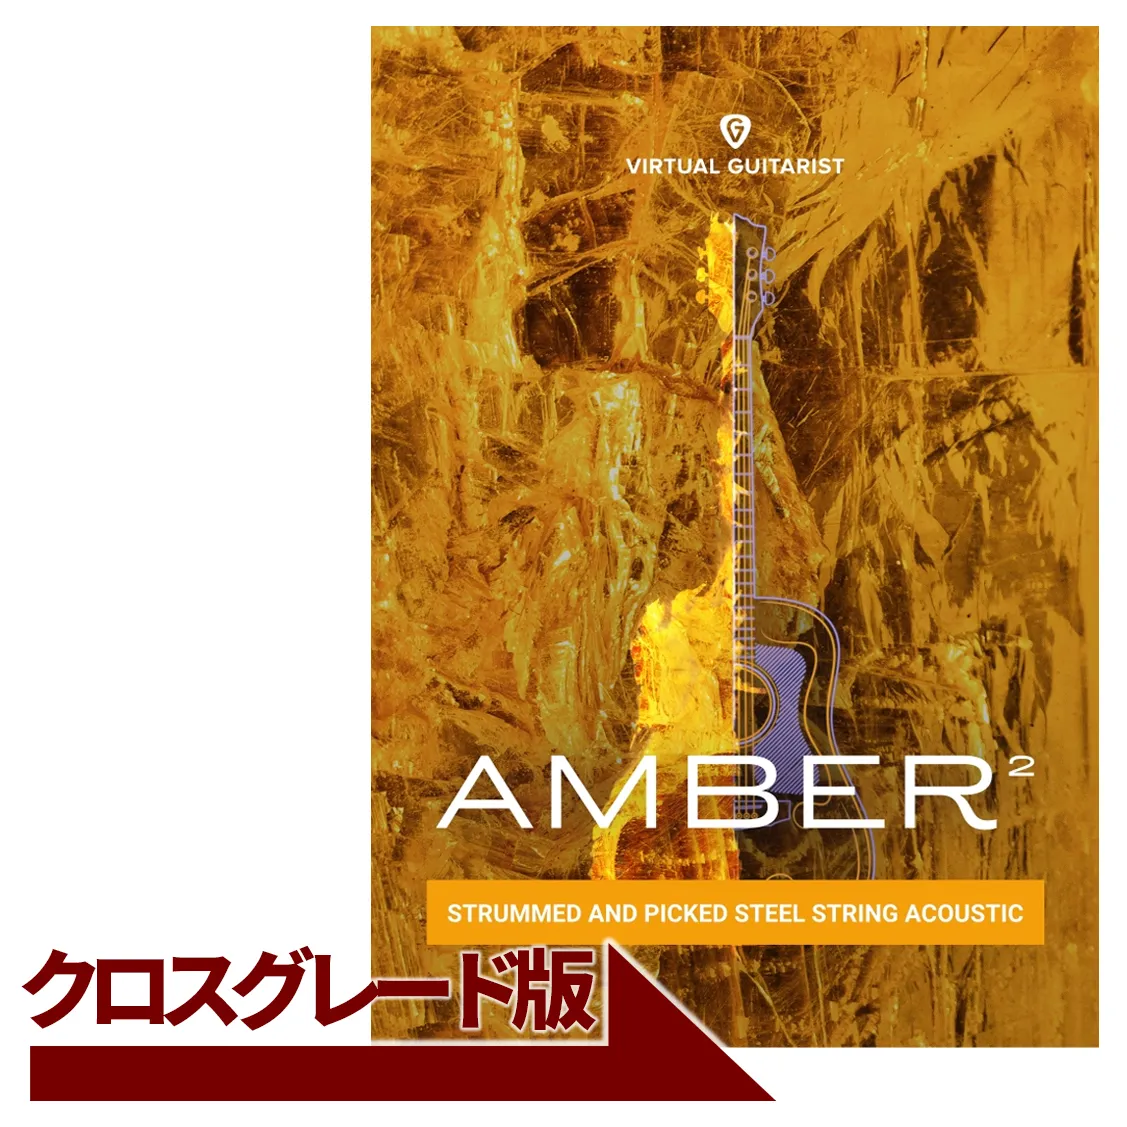 Virtual Guitarist AMBER 2 クロスグレード